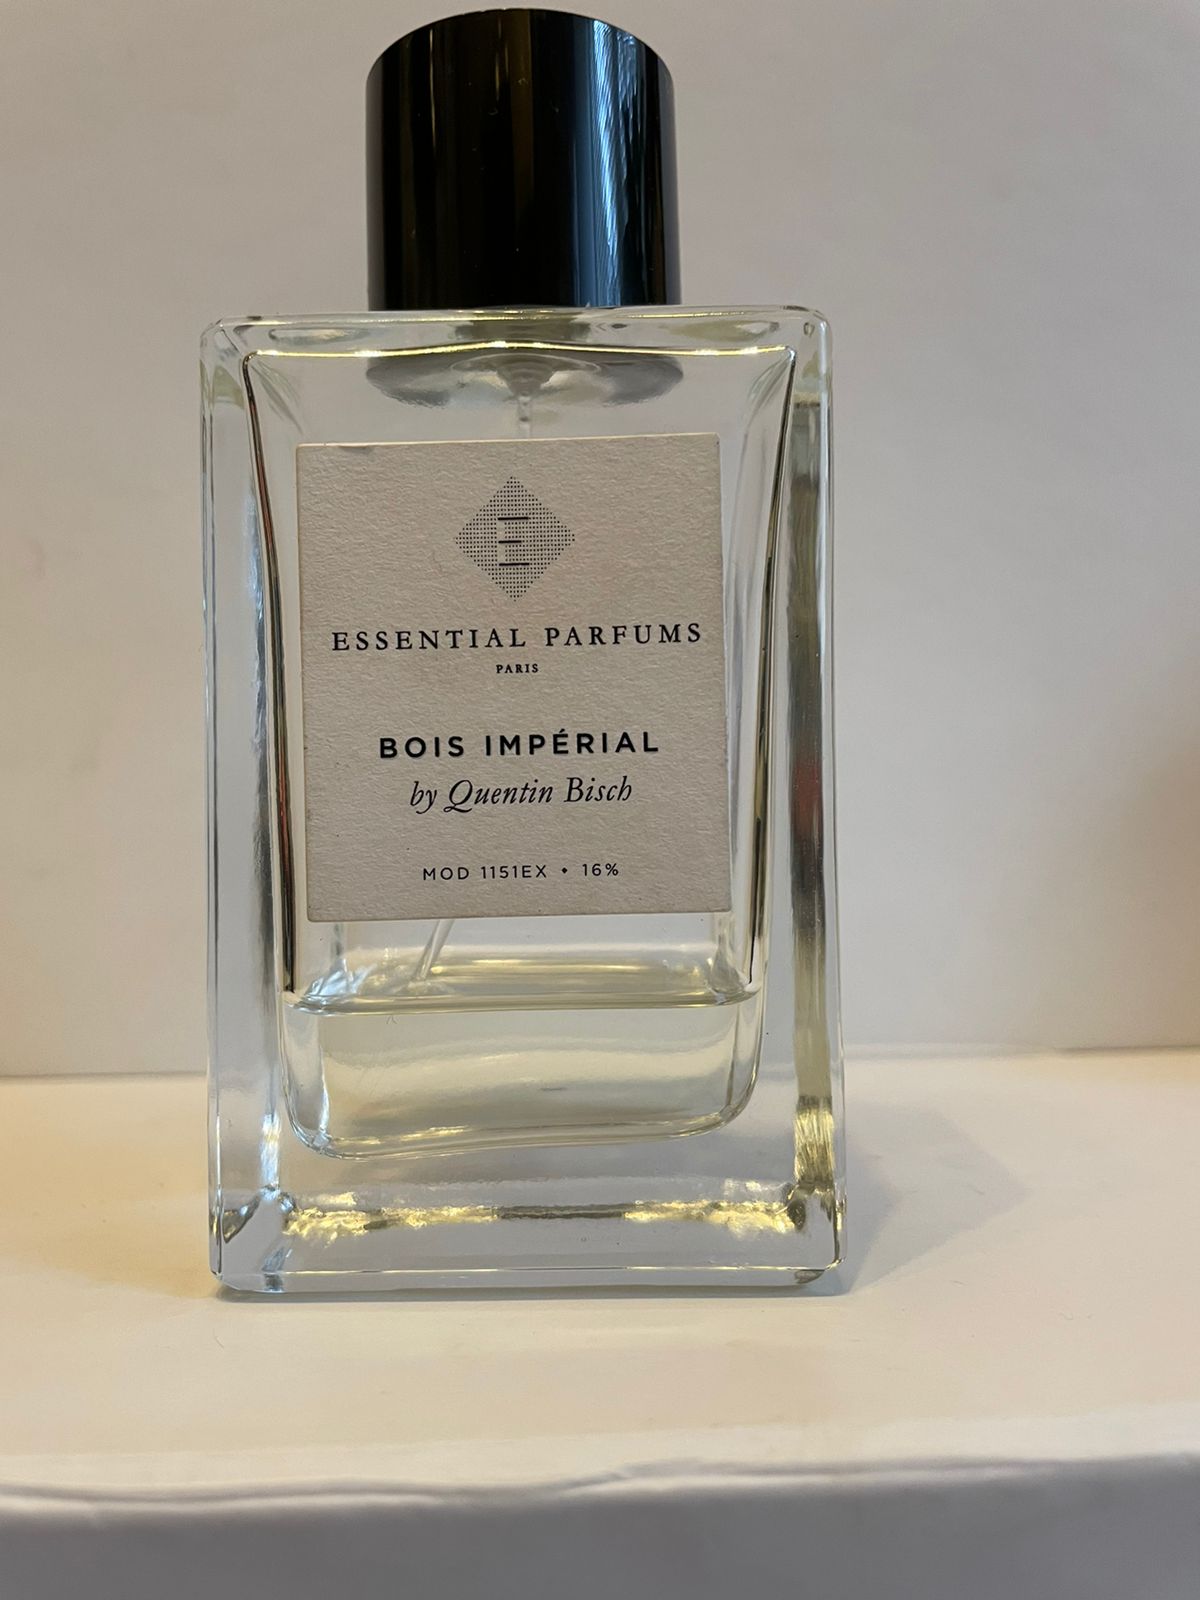 Bois imperial купить золотое. Bois Imperial Essential. Bois Imperial духи. Духи Essential Parfums bois Imperial. Essential Parfums bois Imperial by Quentin bisch.